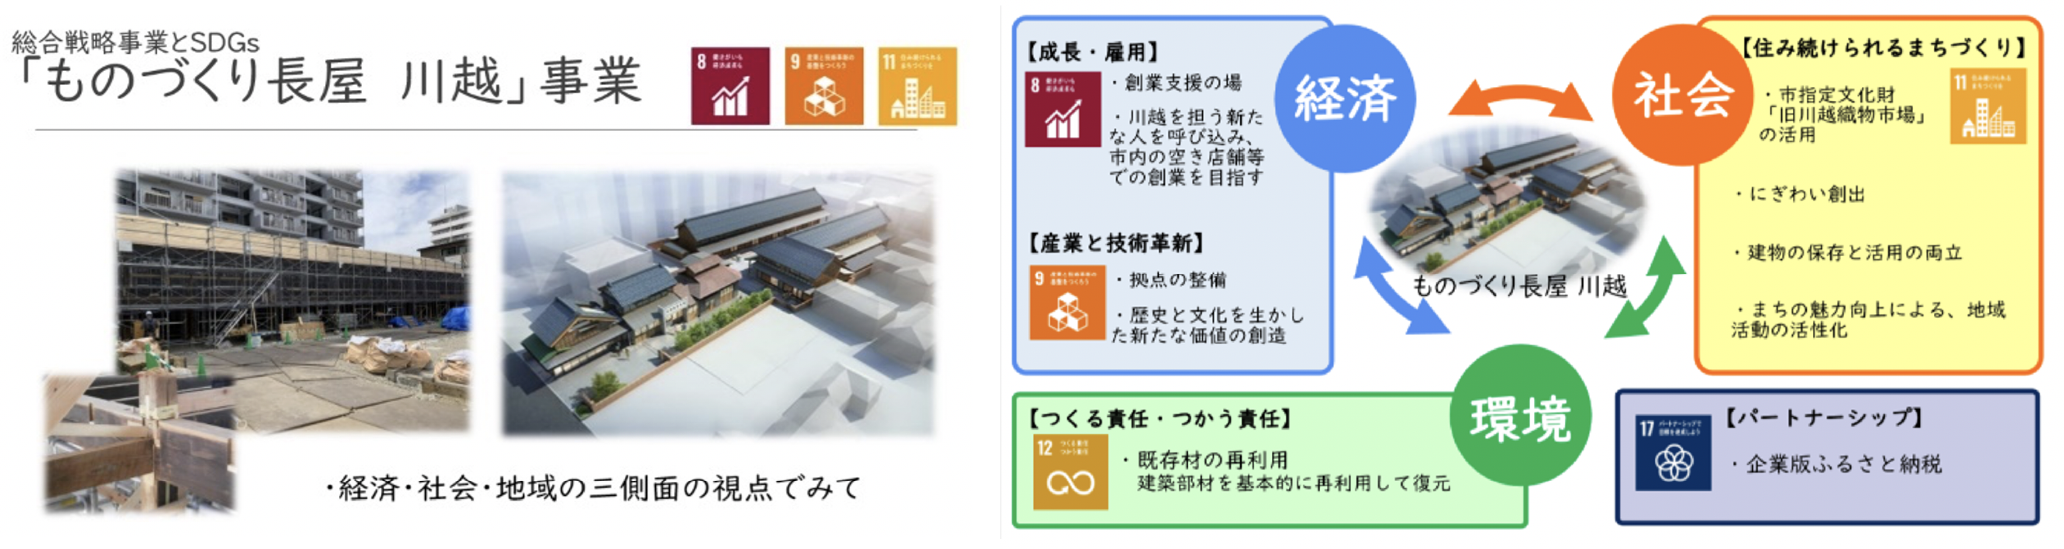 埼玉大学主催「自治体のためのSDGsプログラム」発表資料（令和３年１１月）